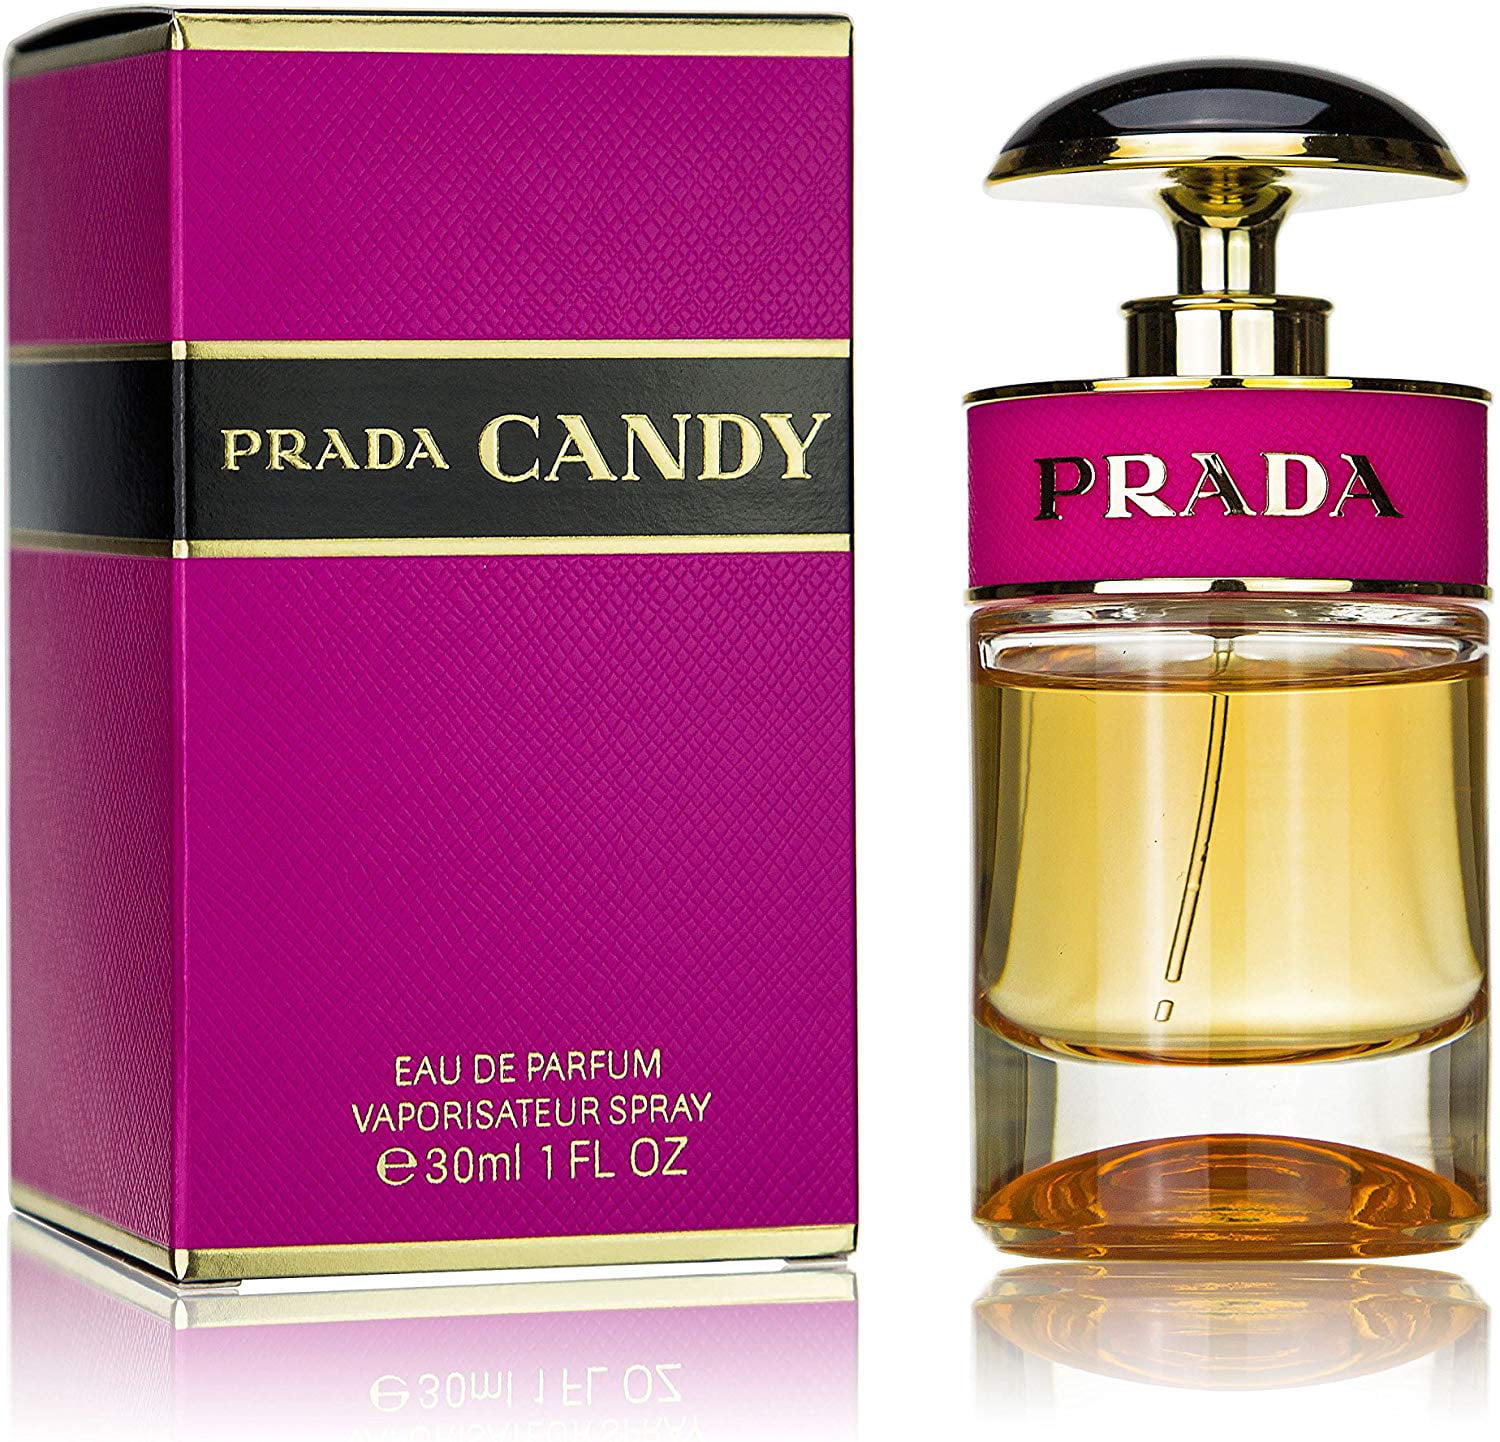 Prada - Prada Candy Sophisticated Eau De Parfum, Perfume for Women, 1 Fluid Ounce (30